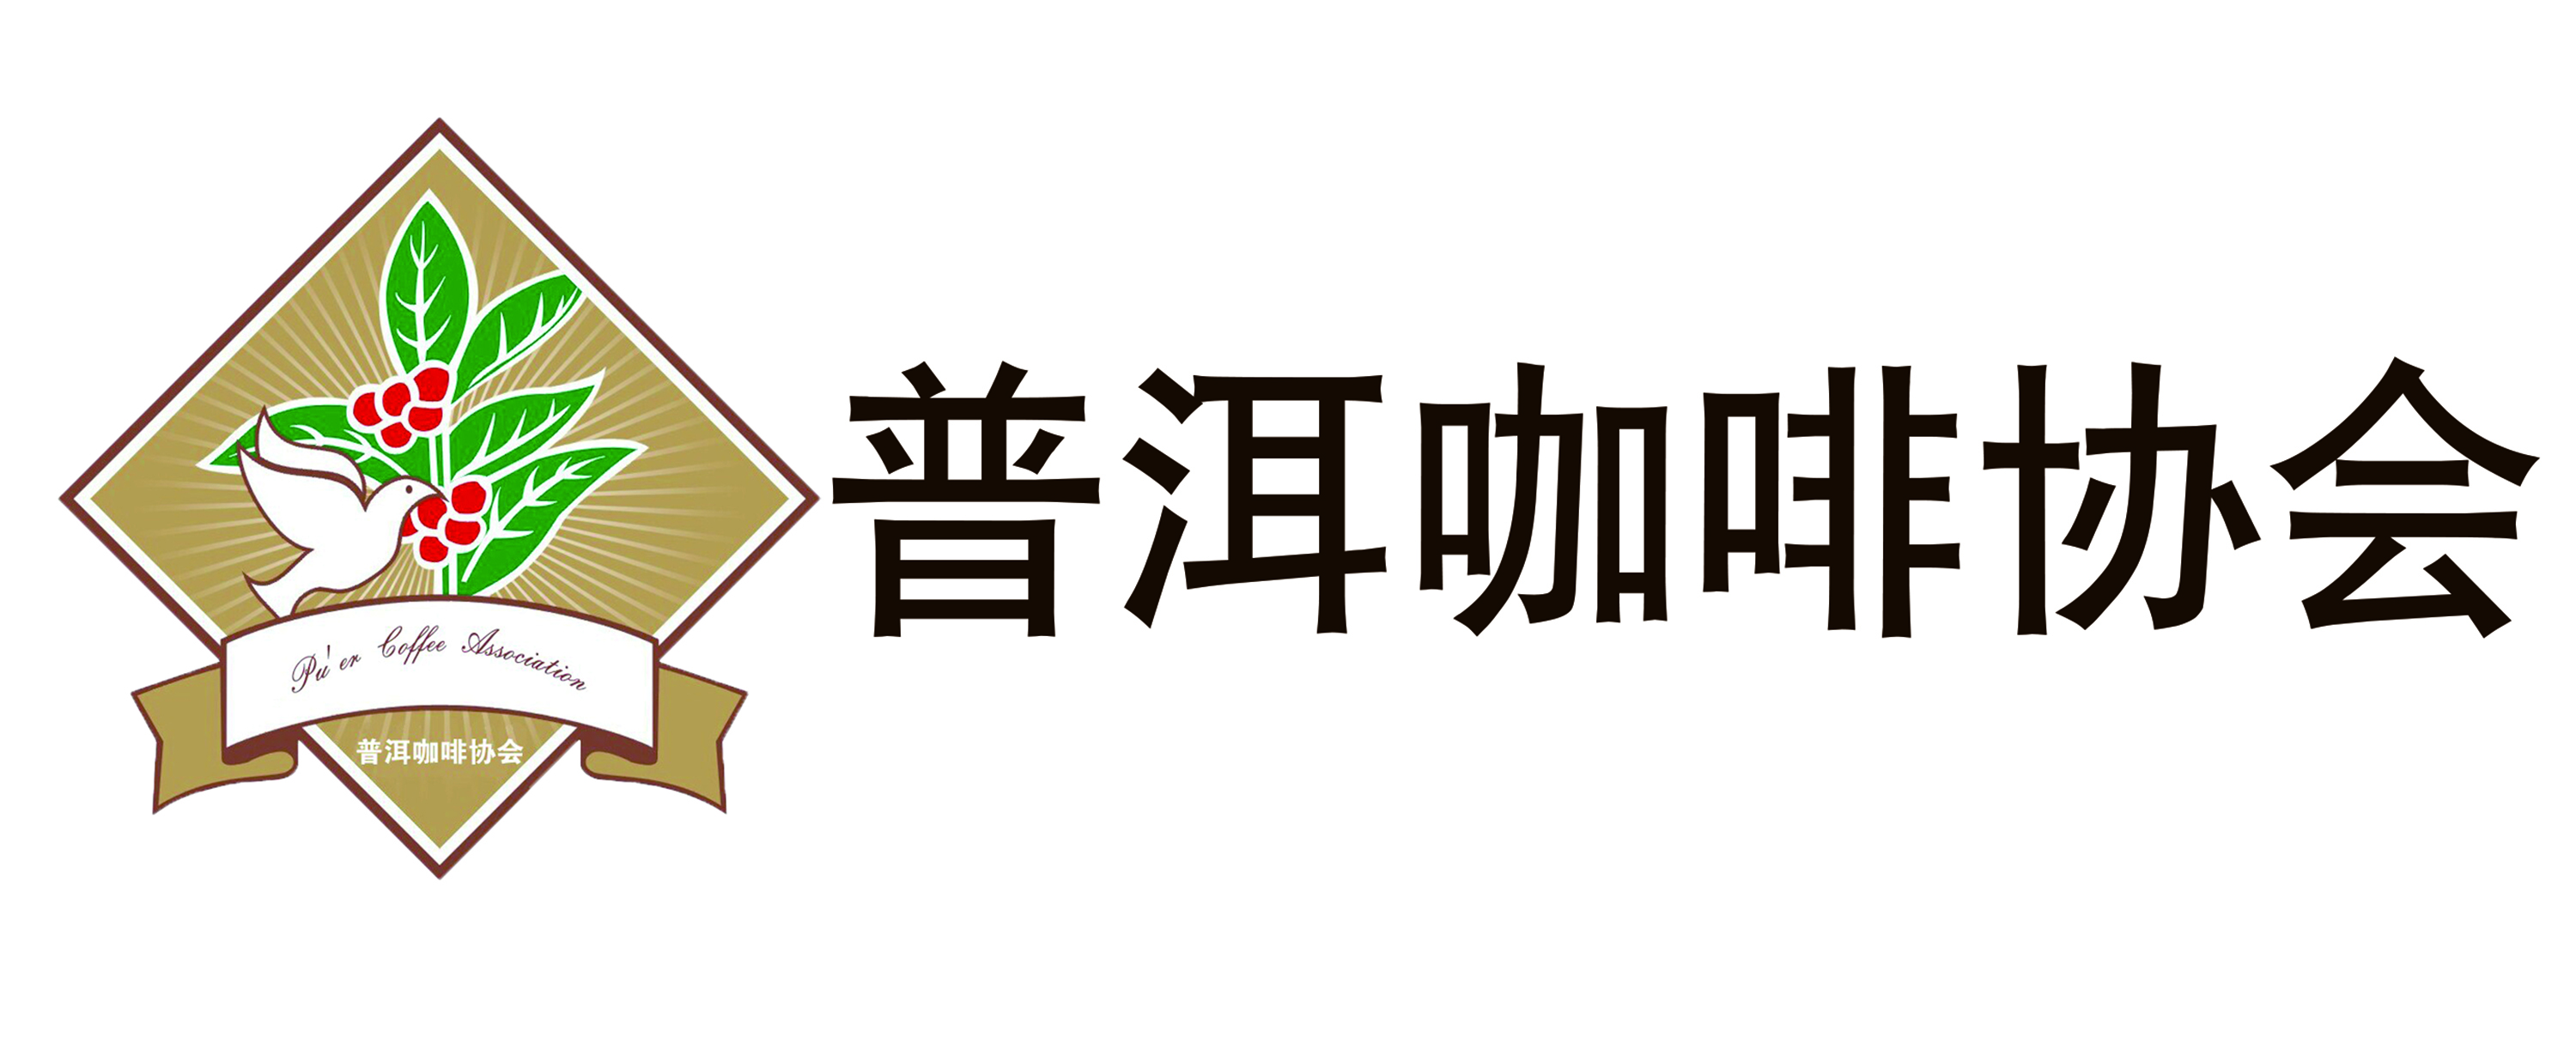 普洱咖啡协会logo(1).jpg